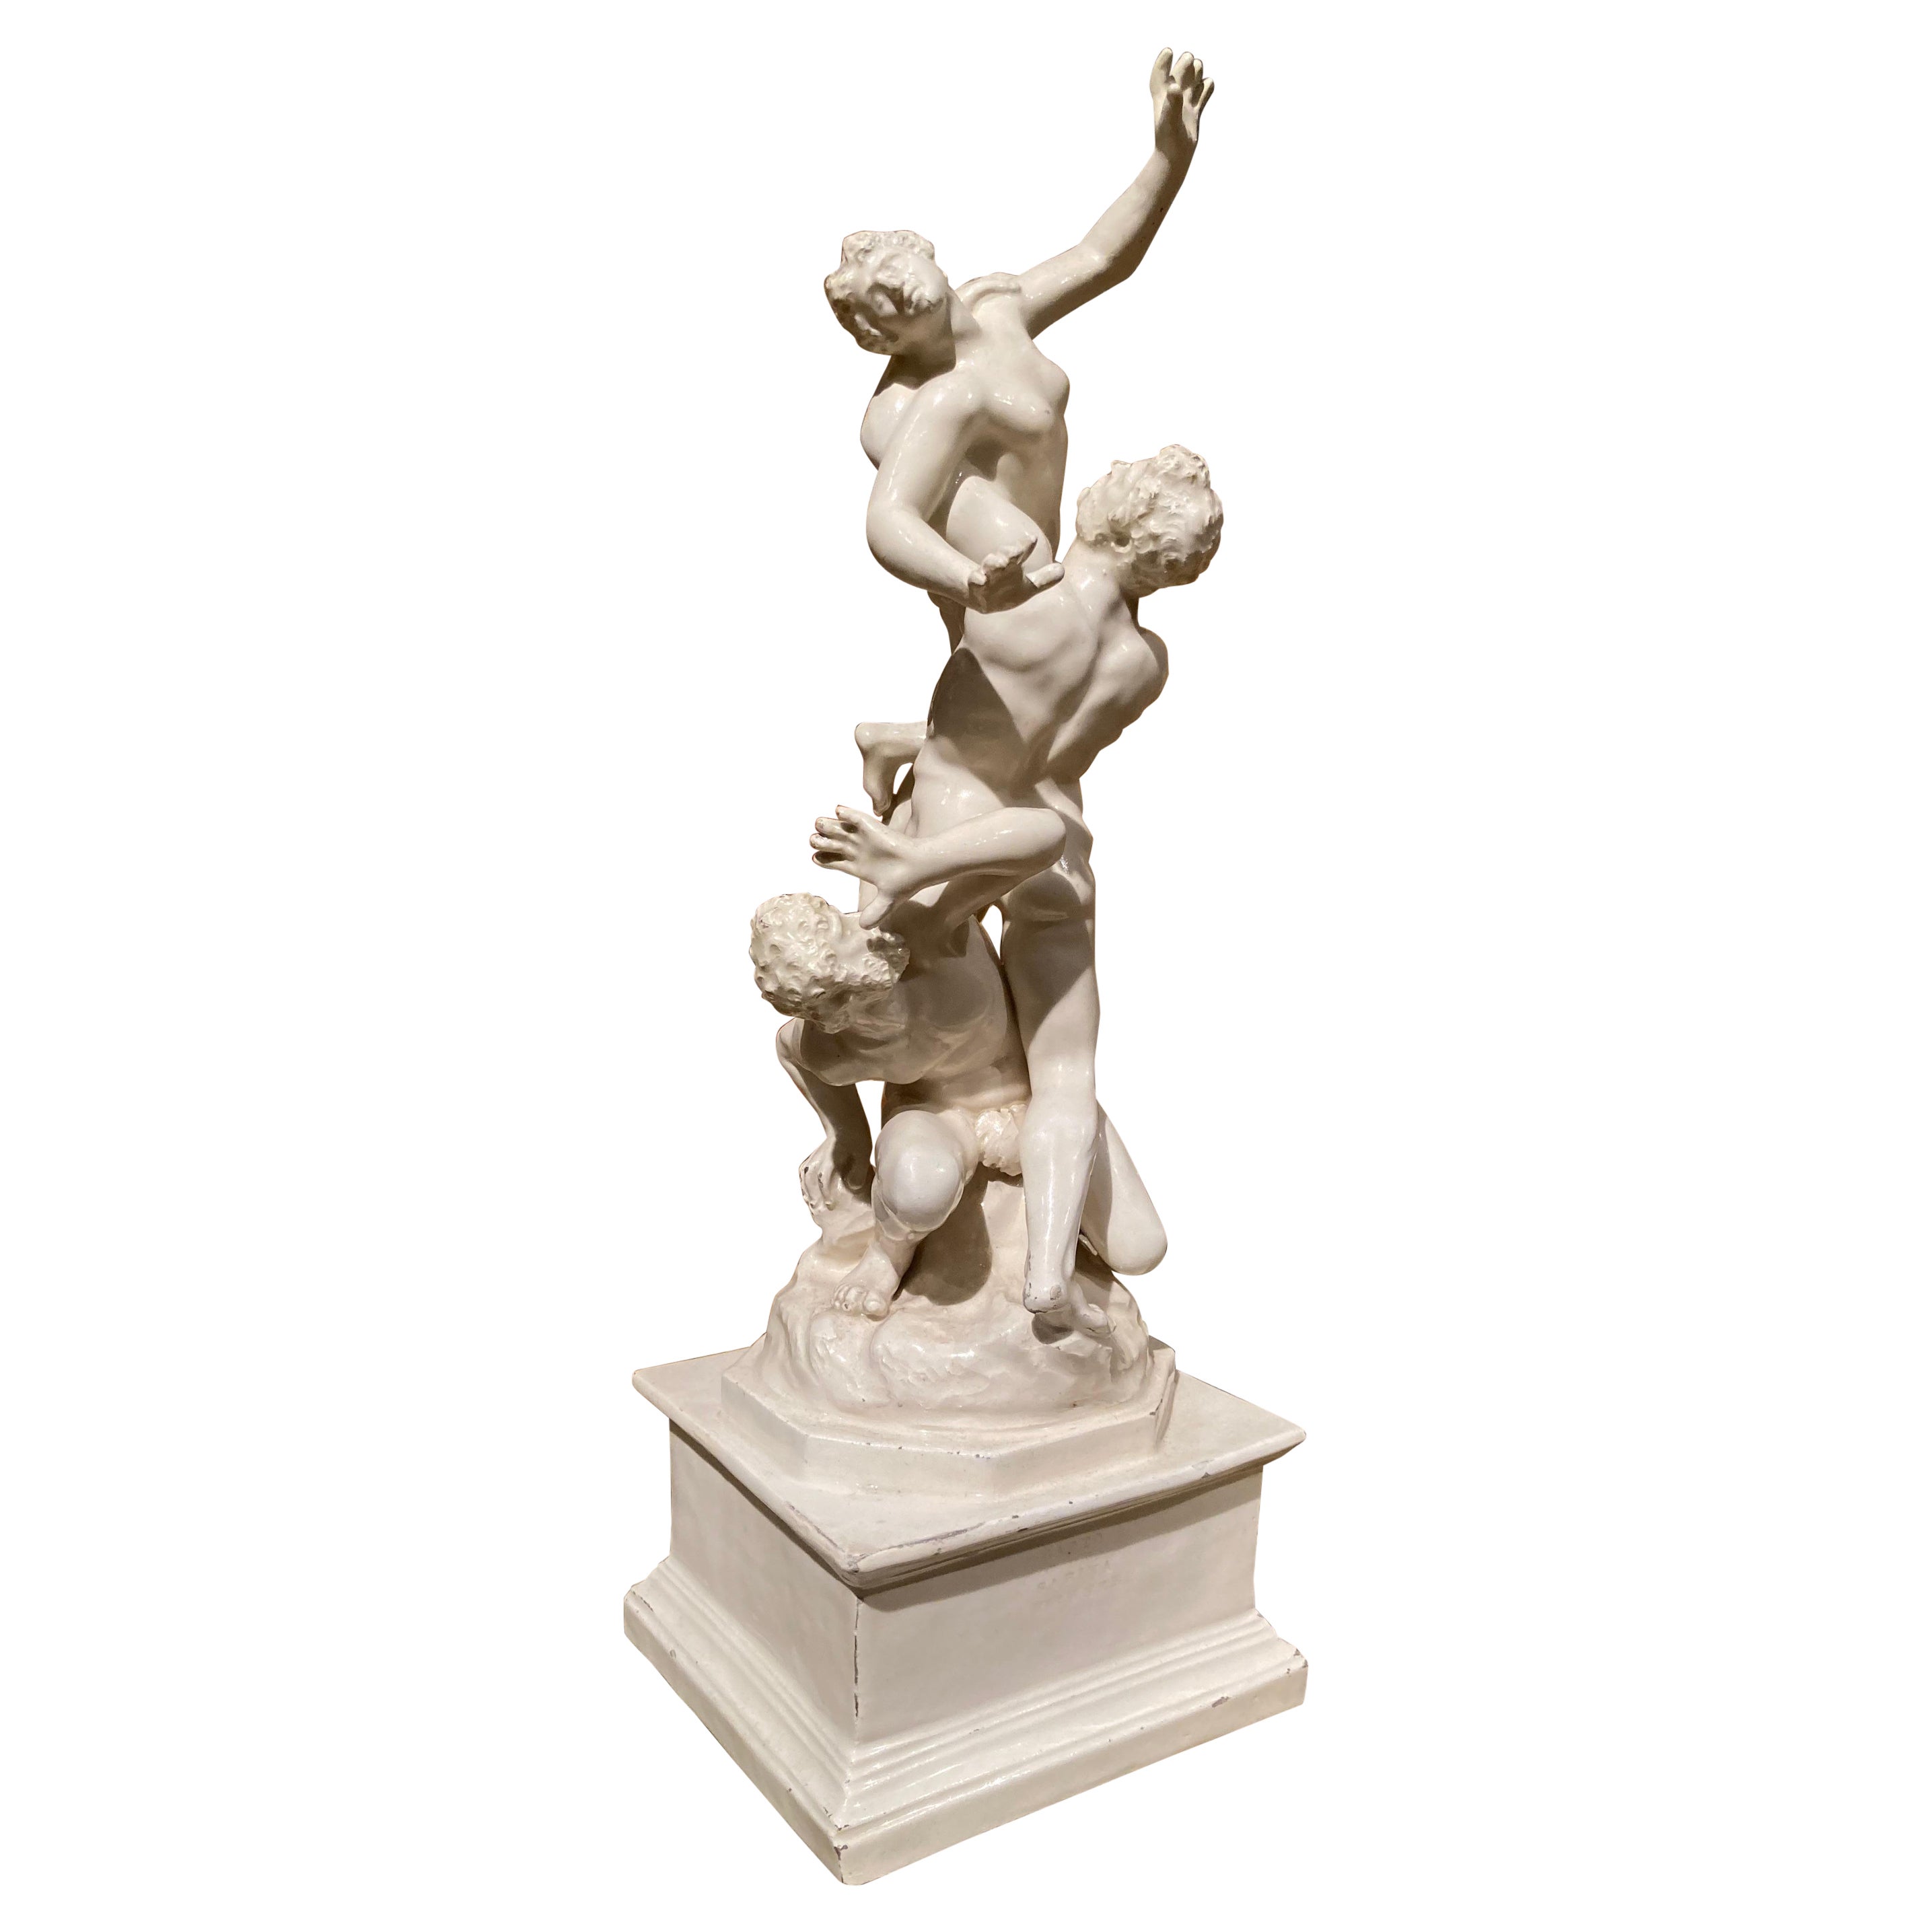 Sculpture de groupe figurative italienne en porcelaine émaillée blanche de la Renaissance du 19ème siècle